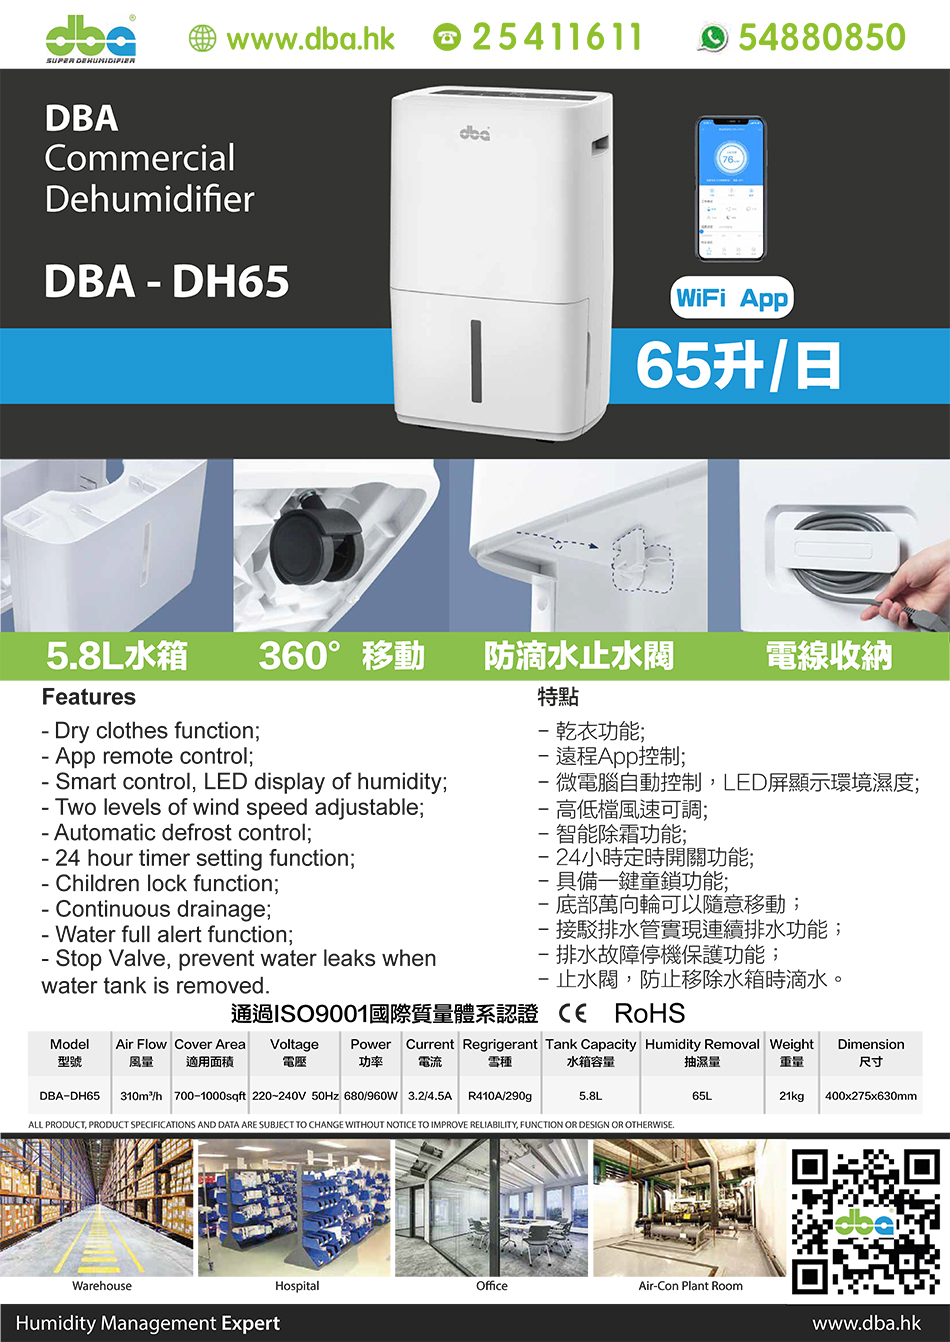 租／售DBA中抽濕量商⽤座地式抽濕機-DBA-DH65-高評分抽濕機2